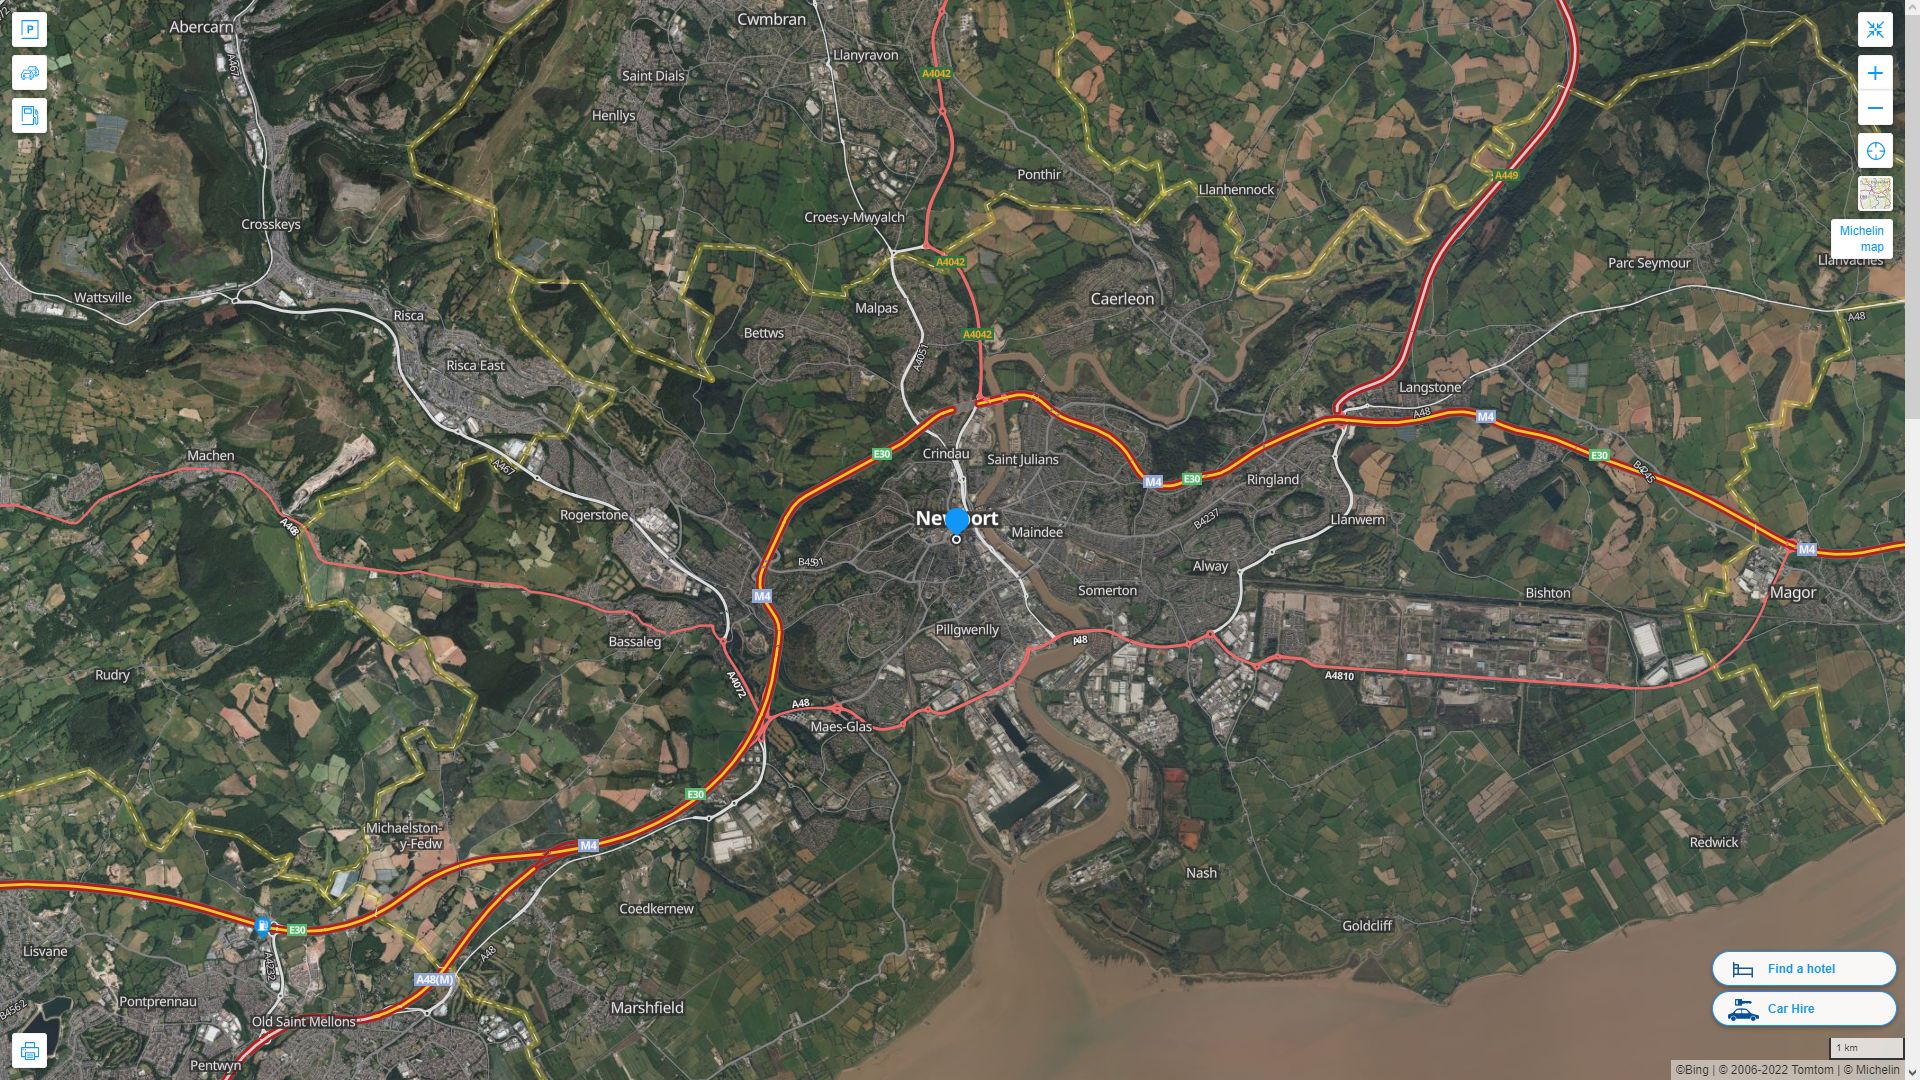 Newport Royaume Uni Autoroute et carte routiere avec vue satellite